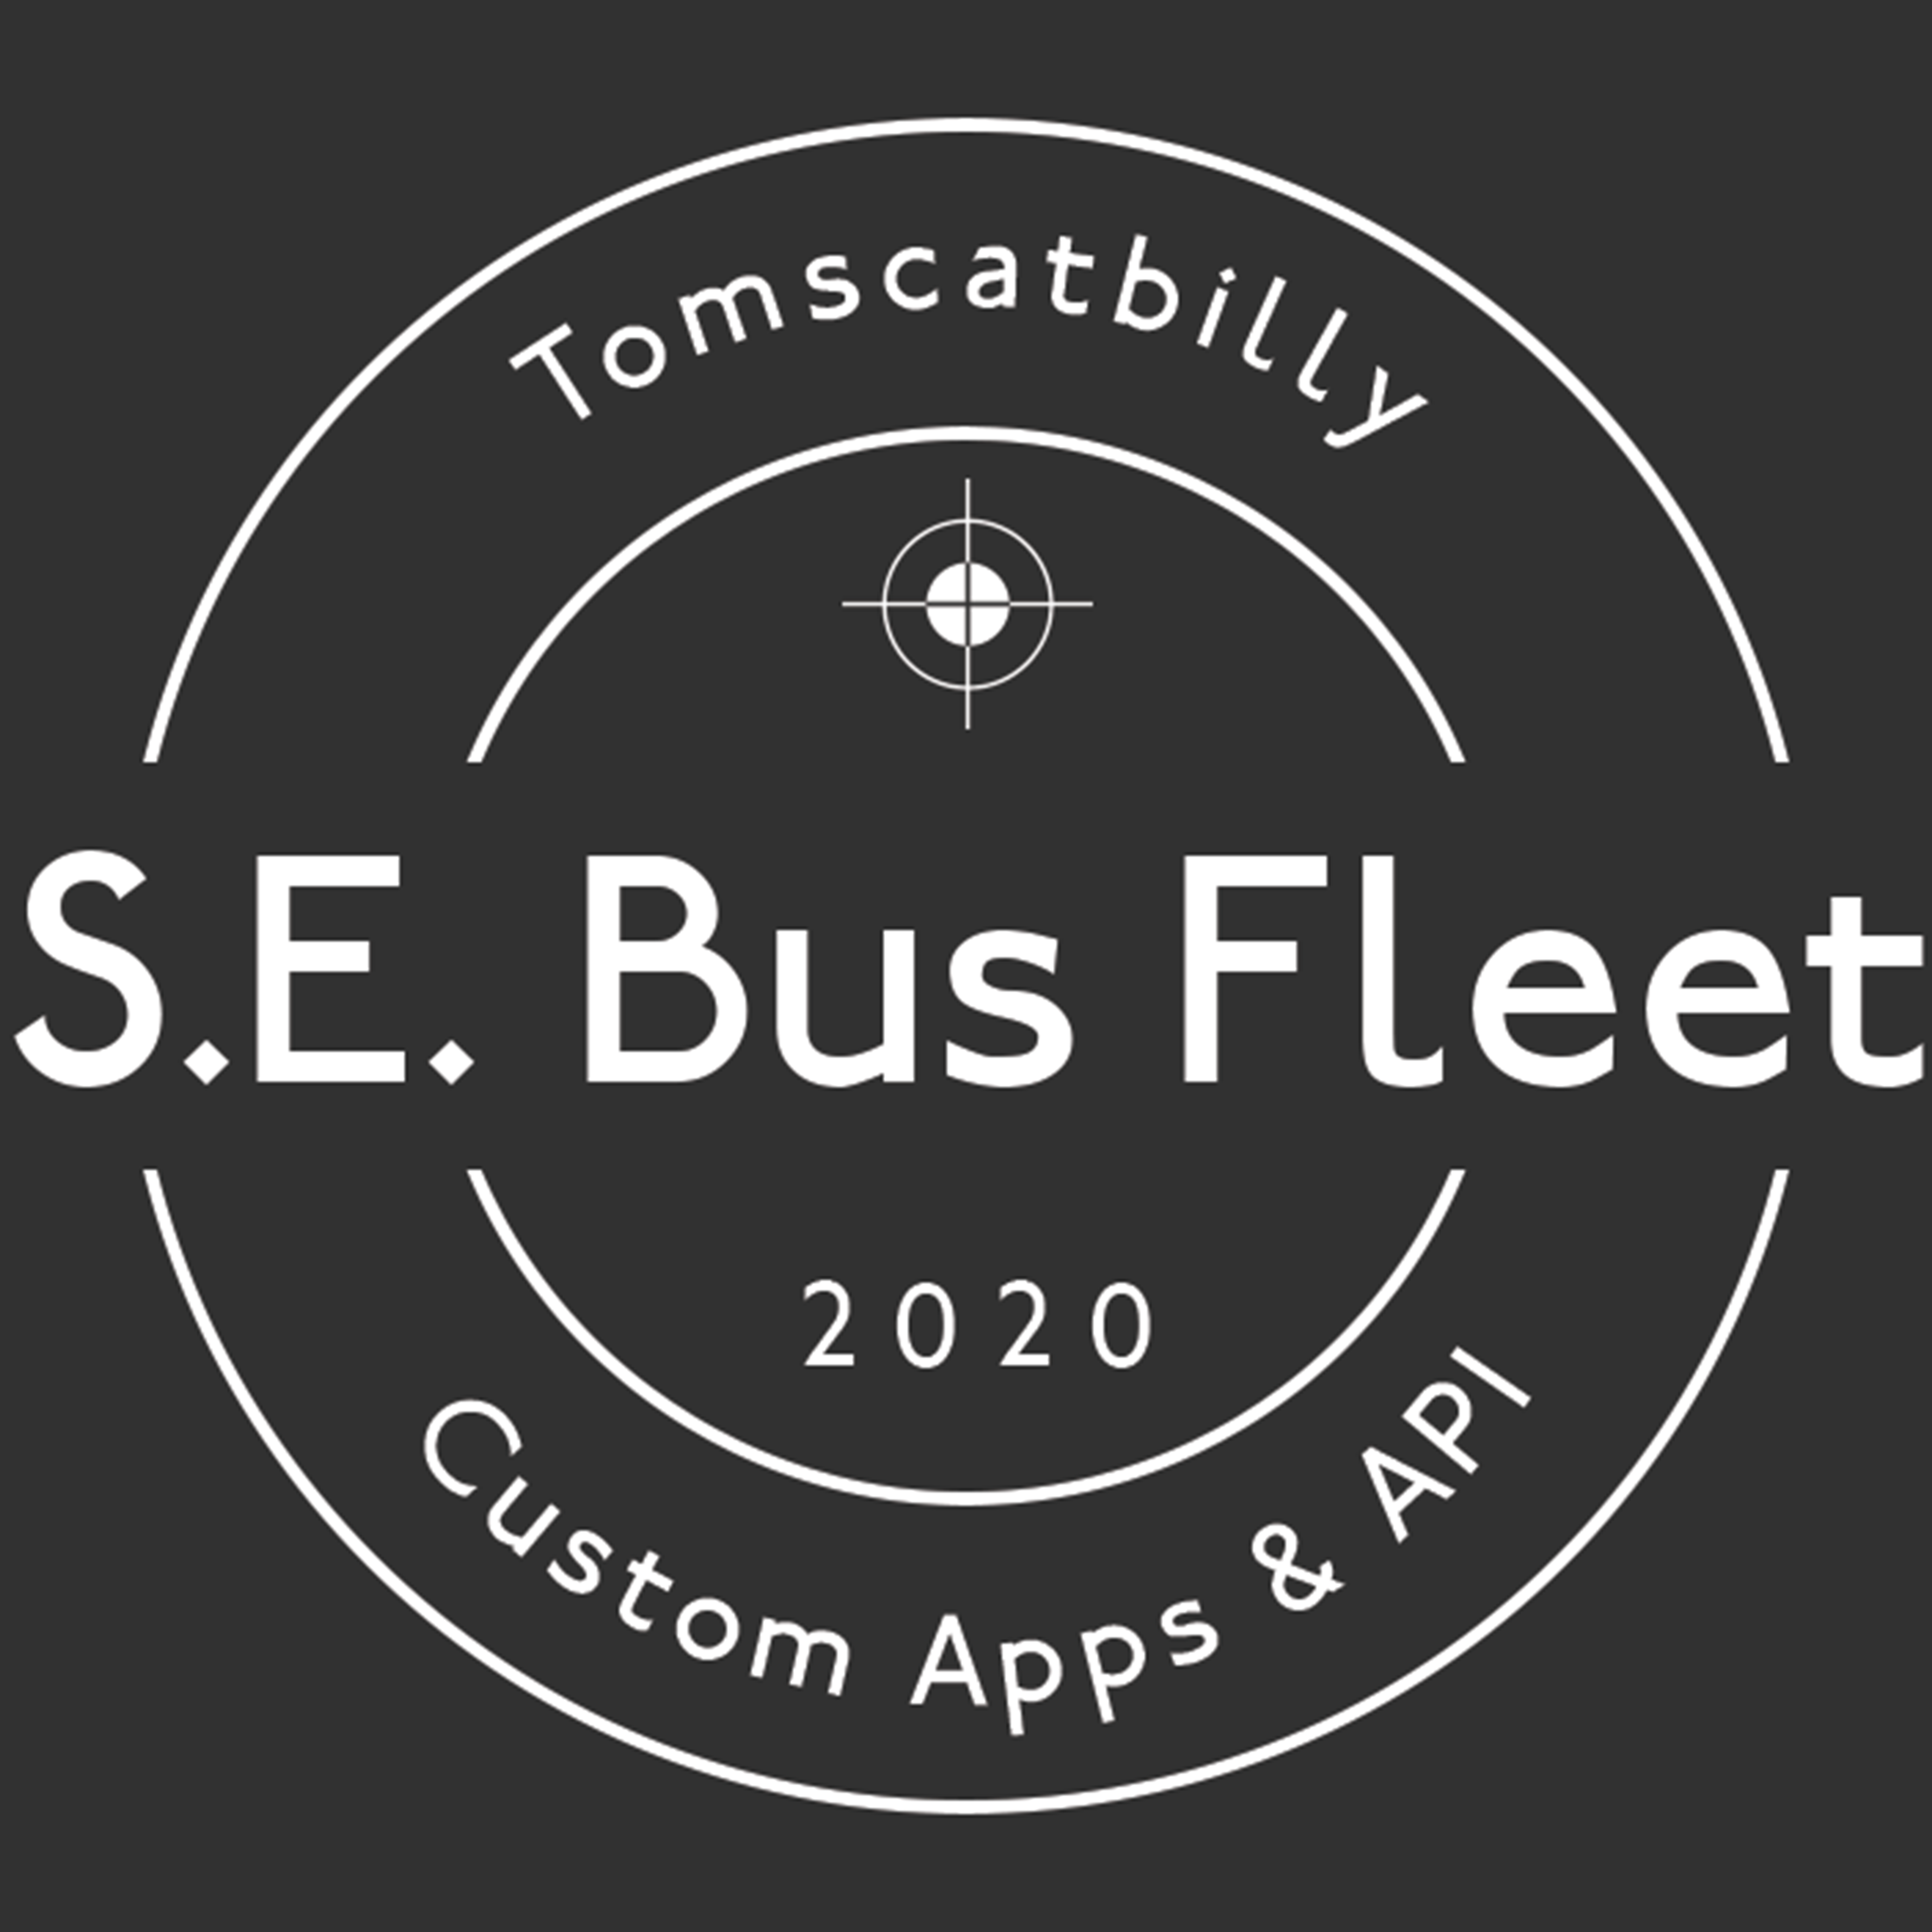 The S.E. Bus Fleet Logo